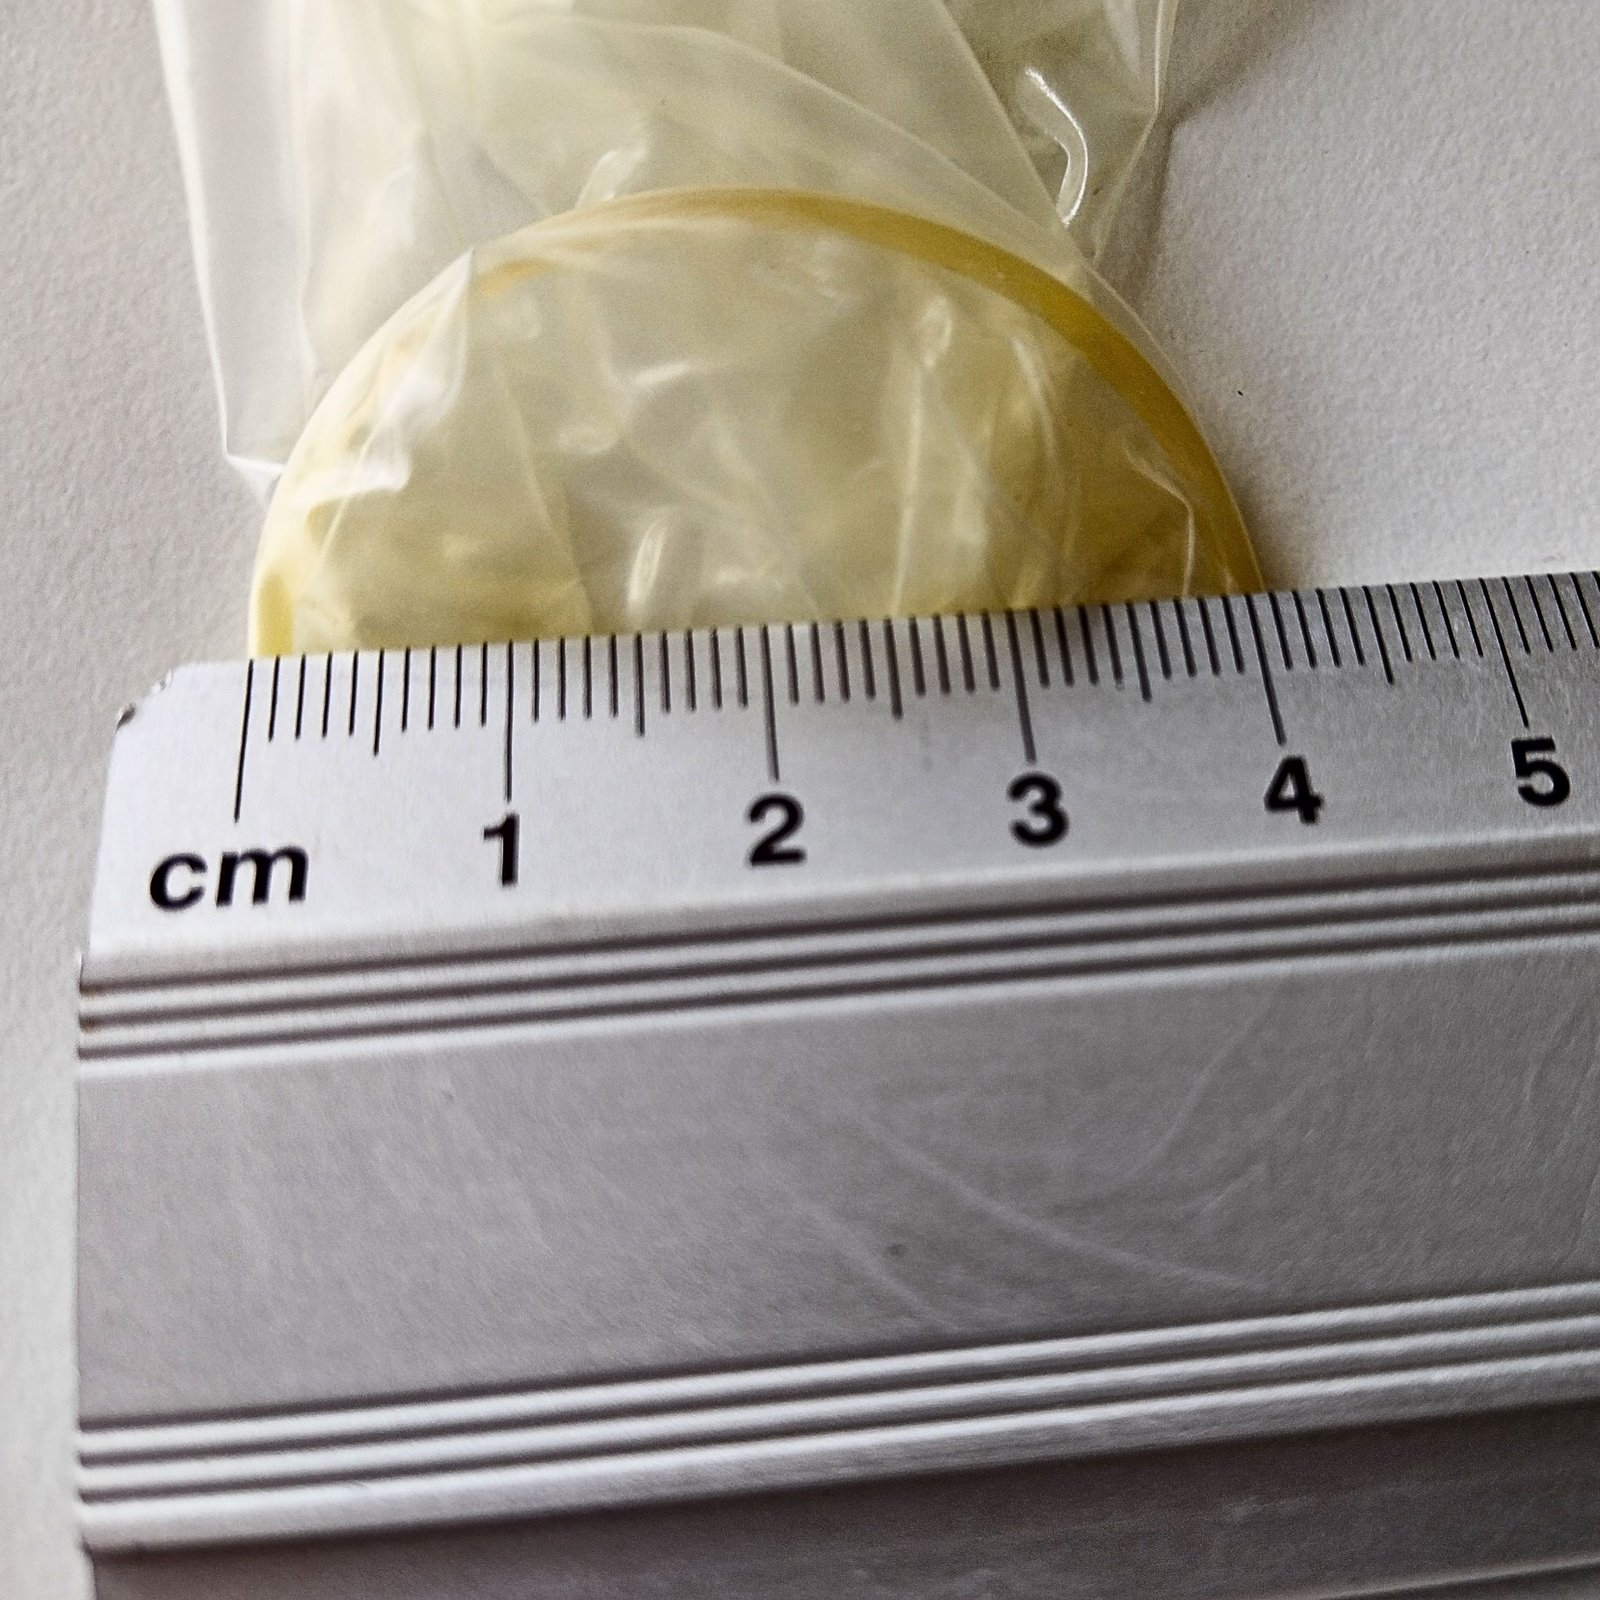 Измерение диаметра презерватива